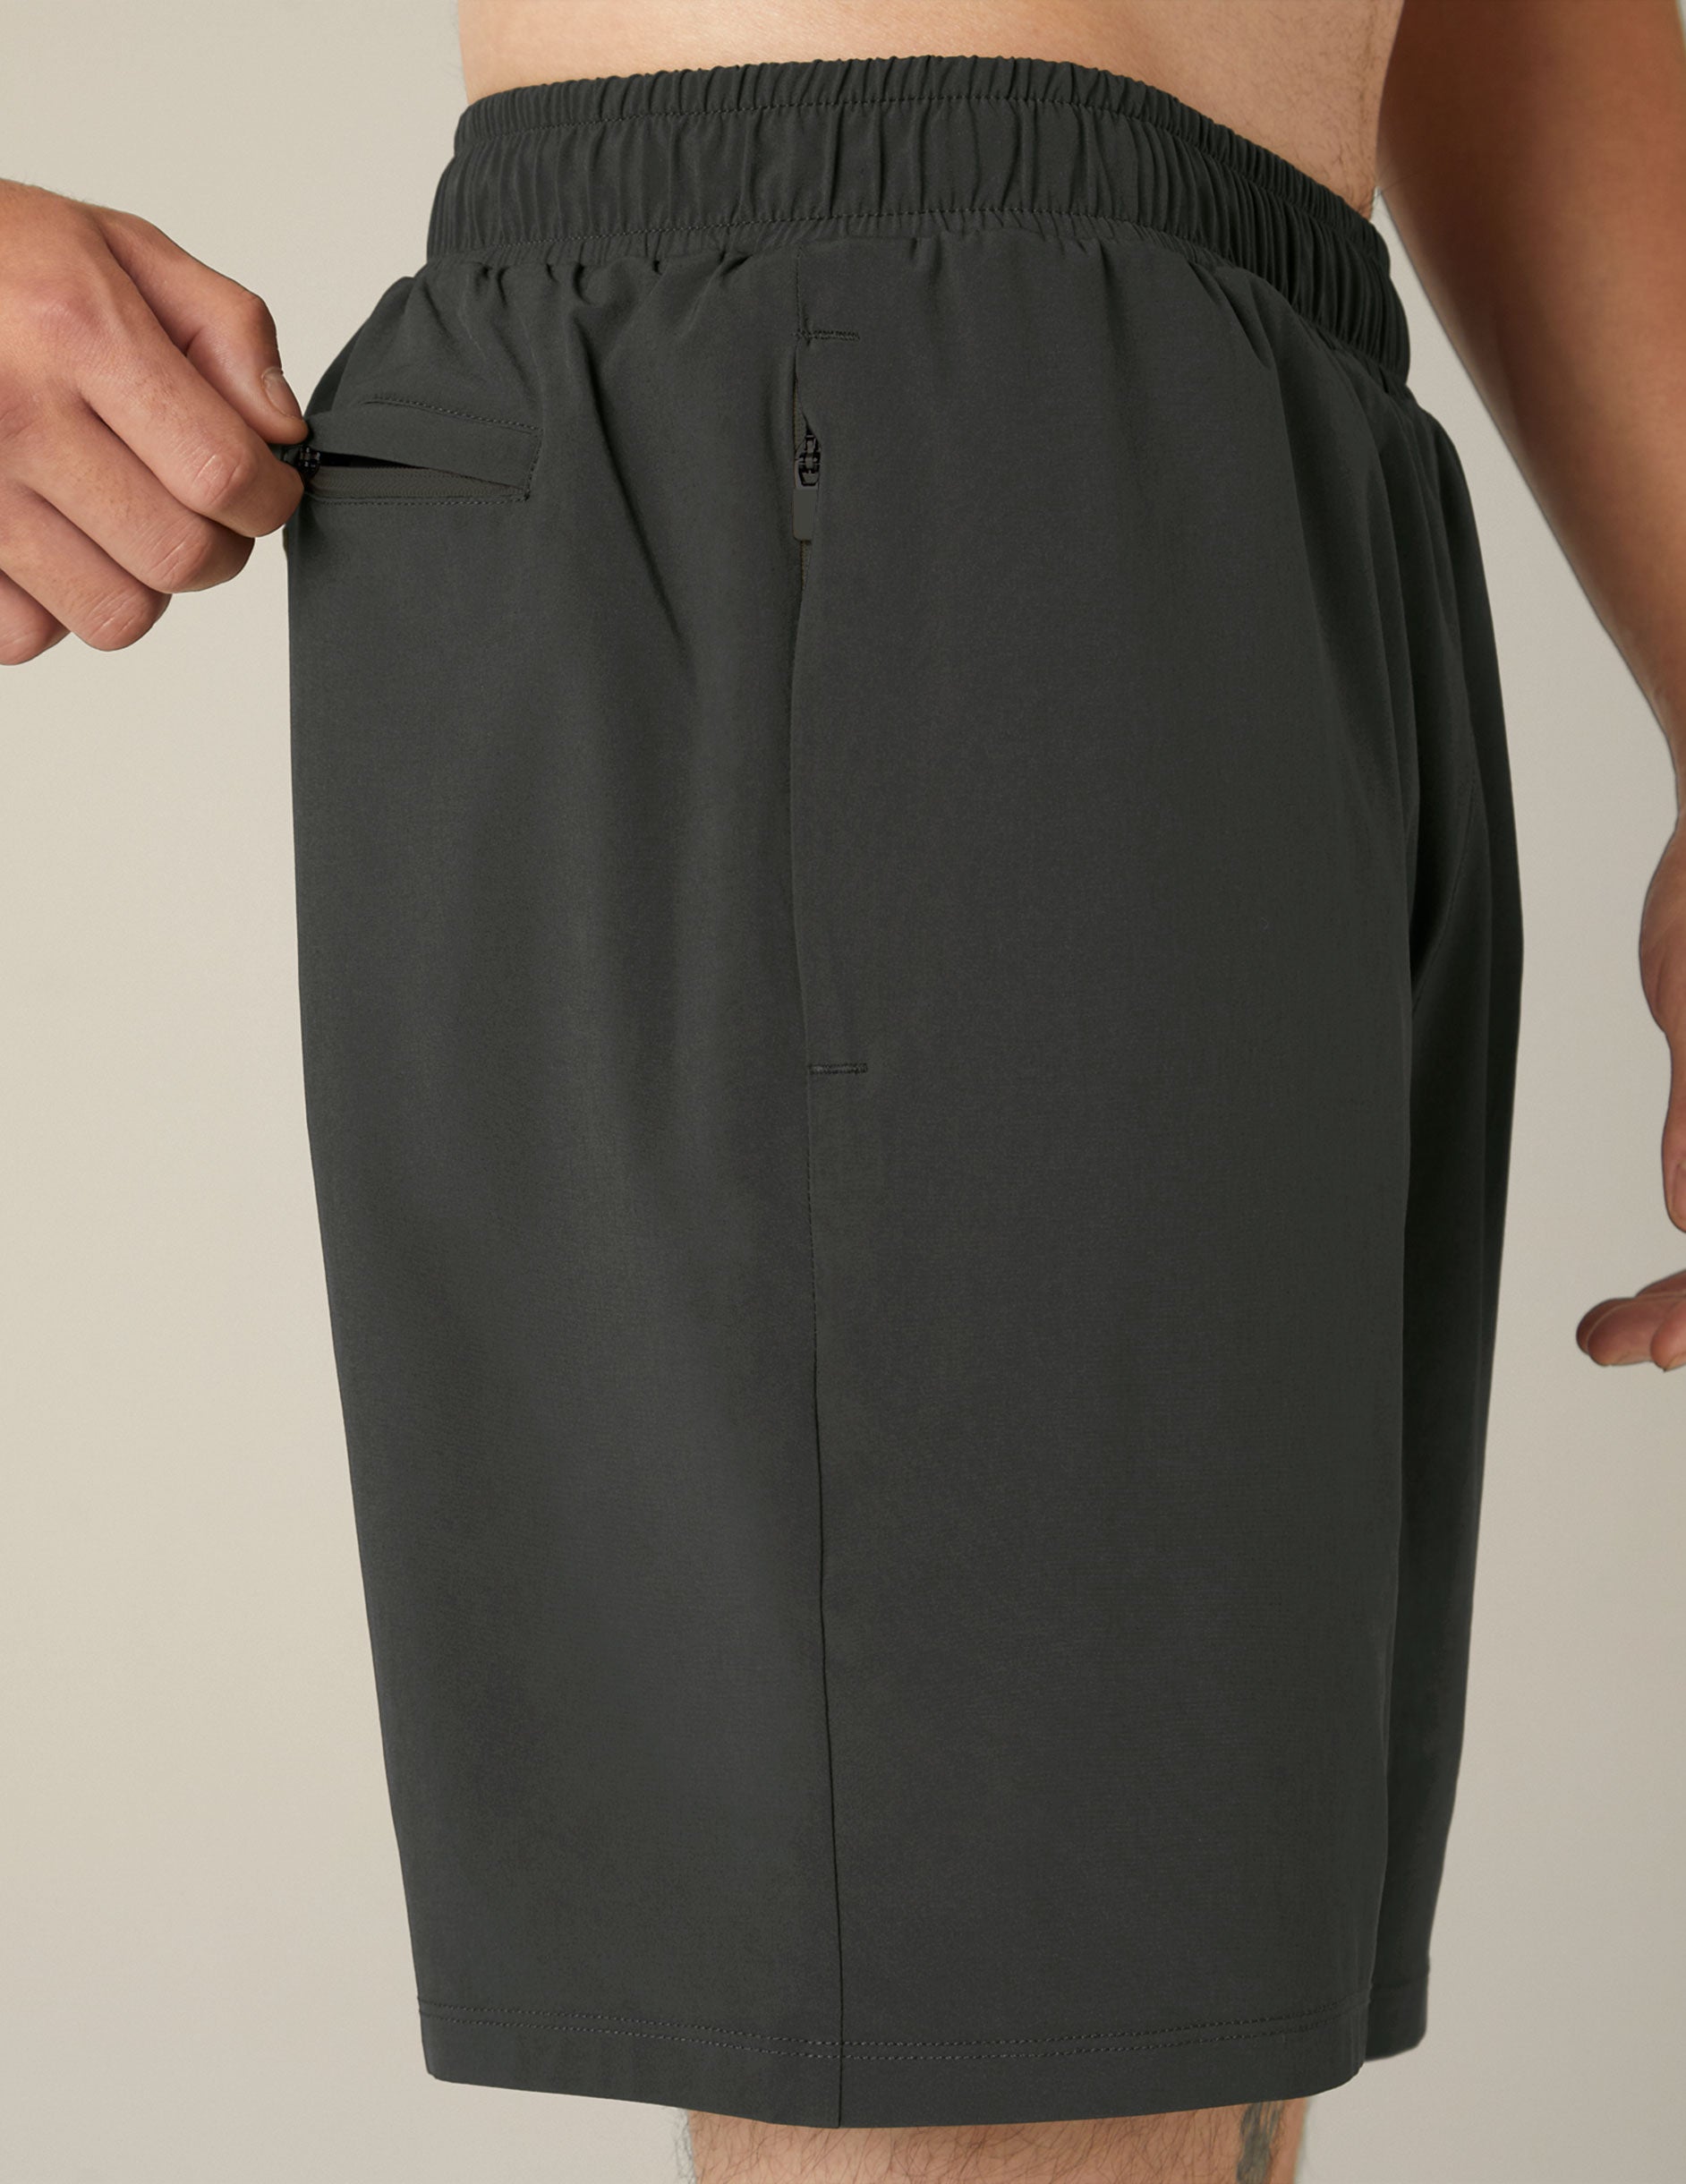 gray mens athletic shorts.